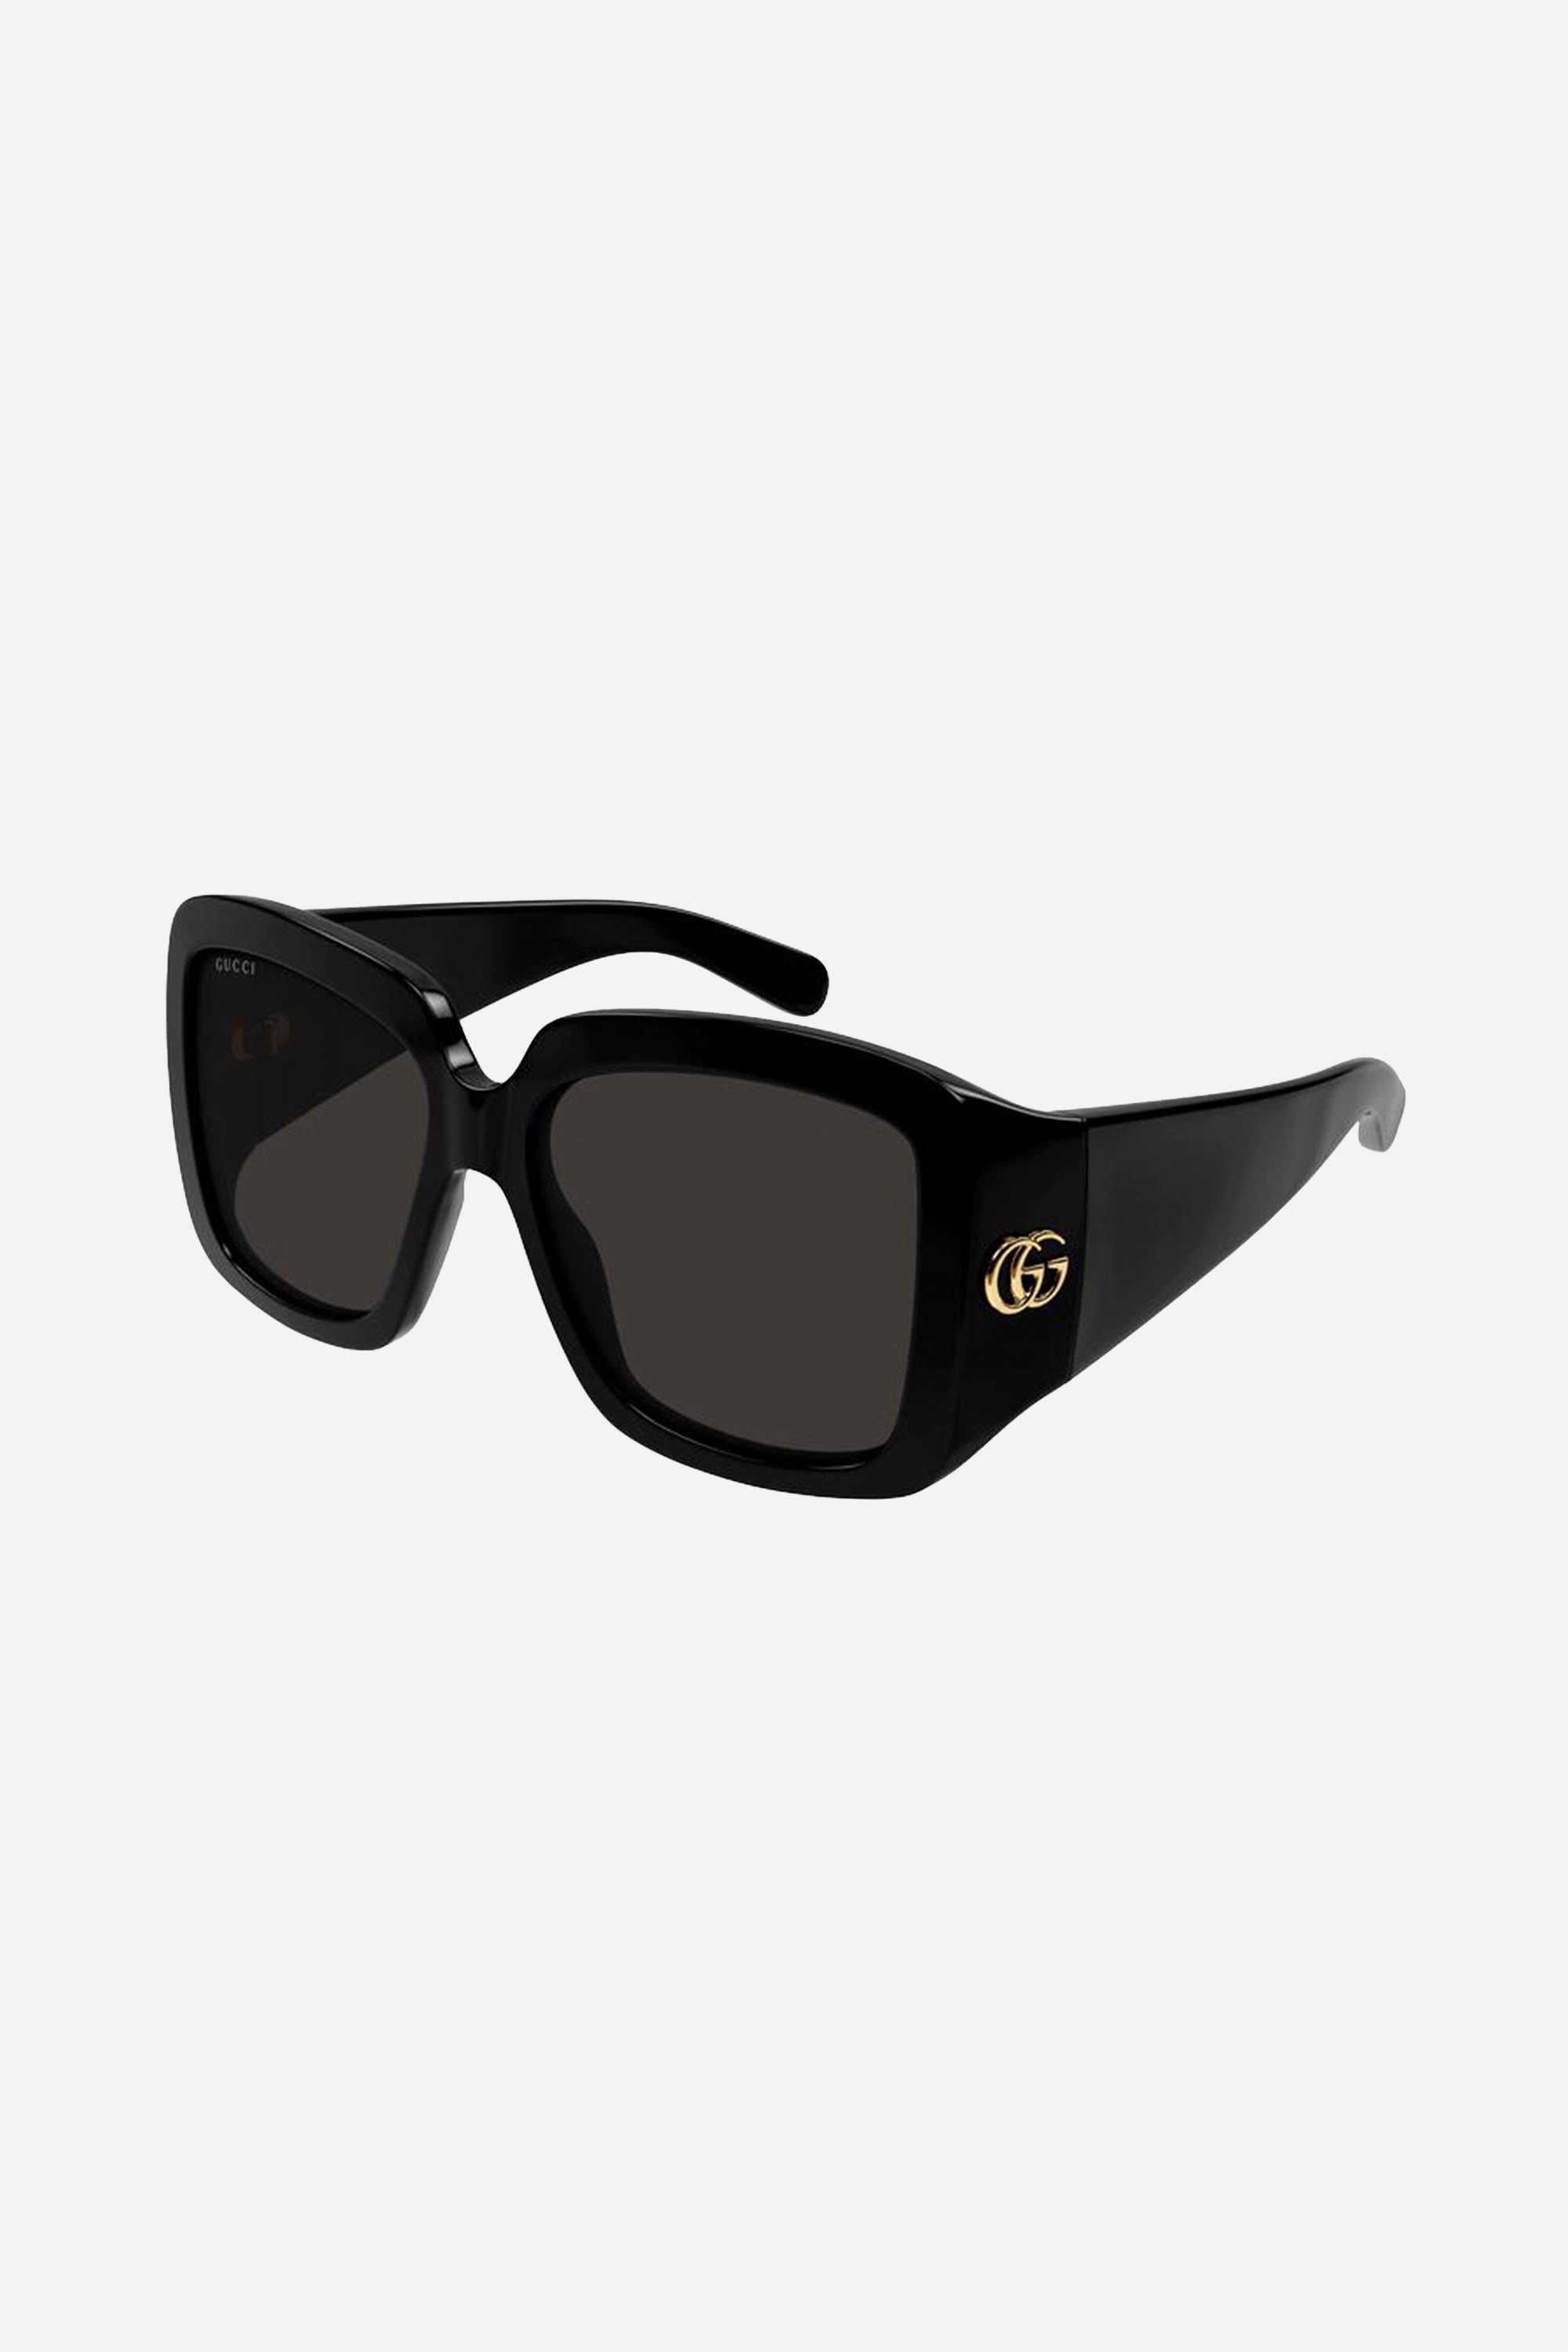 Gucci wrap around black sunglasses - Eyewear Club